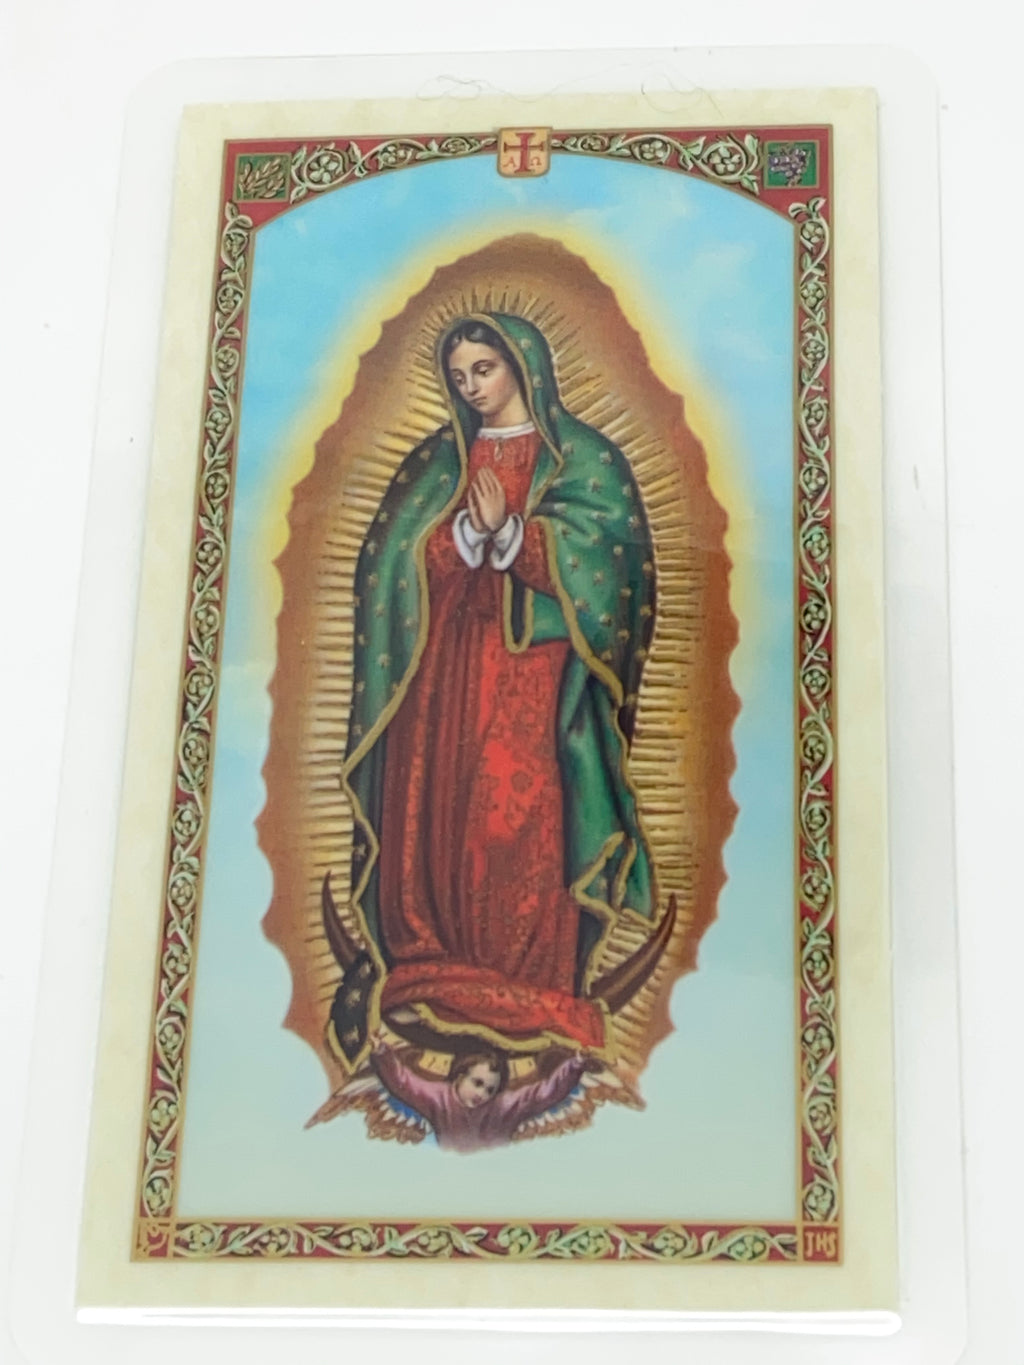 Virgen de Guadalupe Tarjeta Sagrada laminada (Cubierta de Plástico) - Unique Catholic Gifts